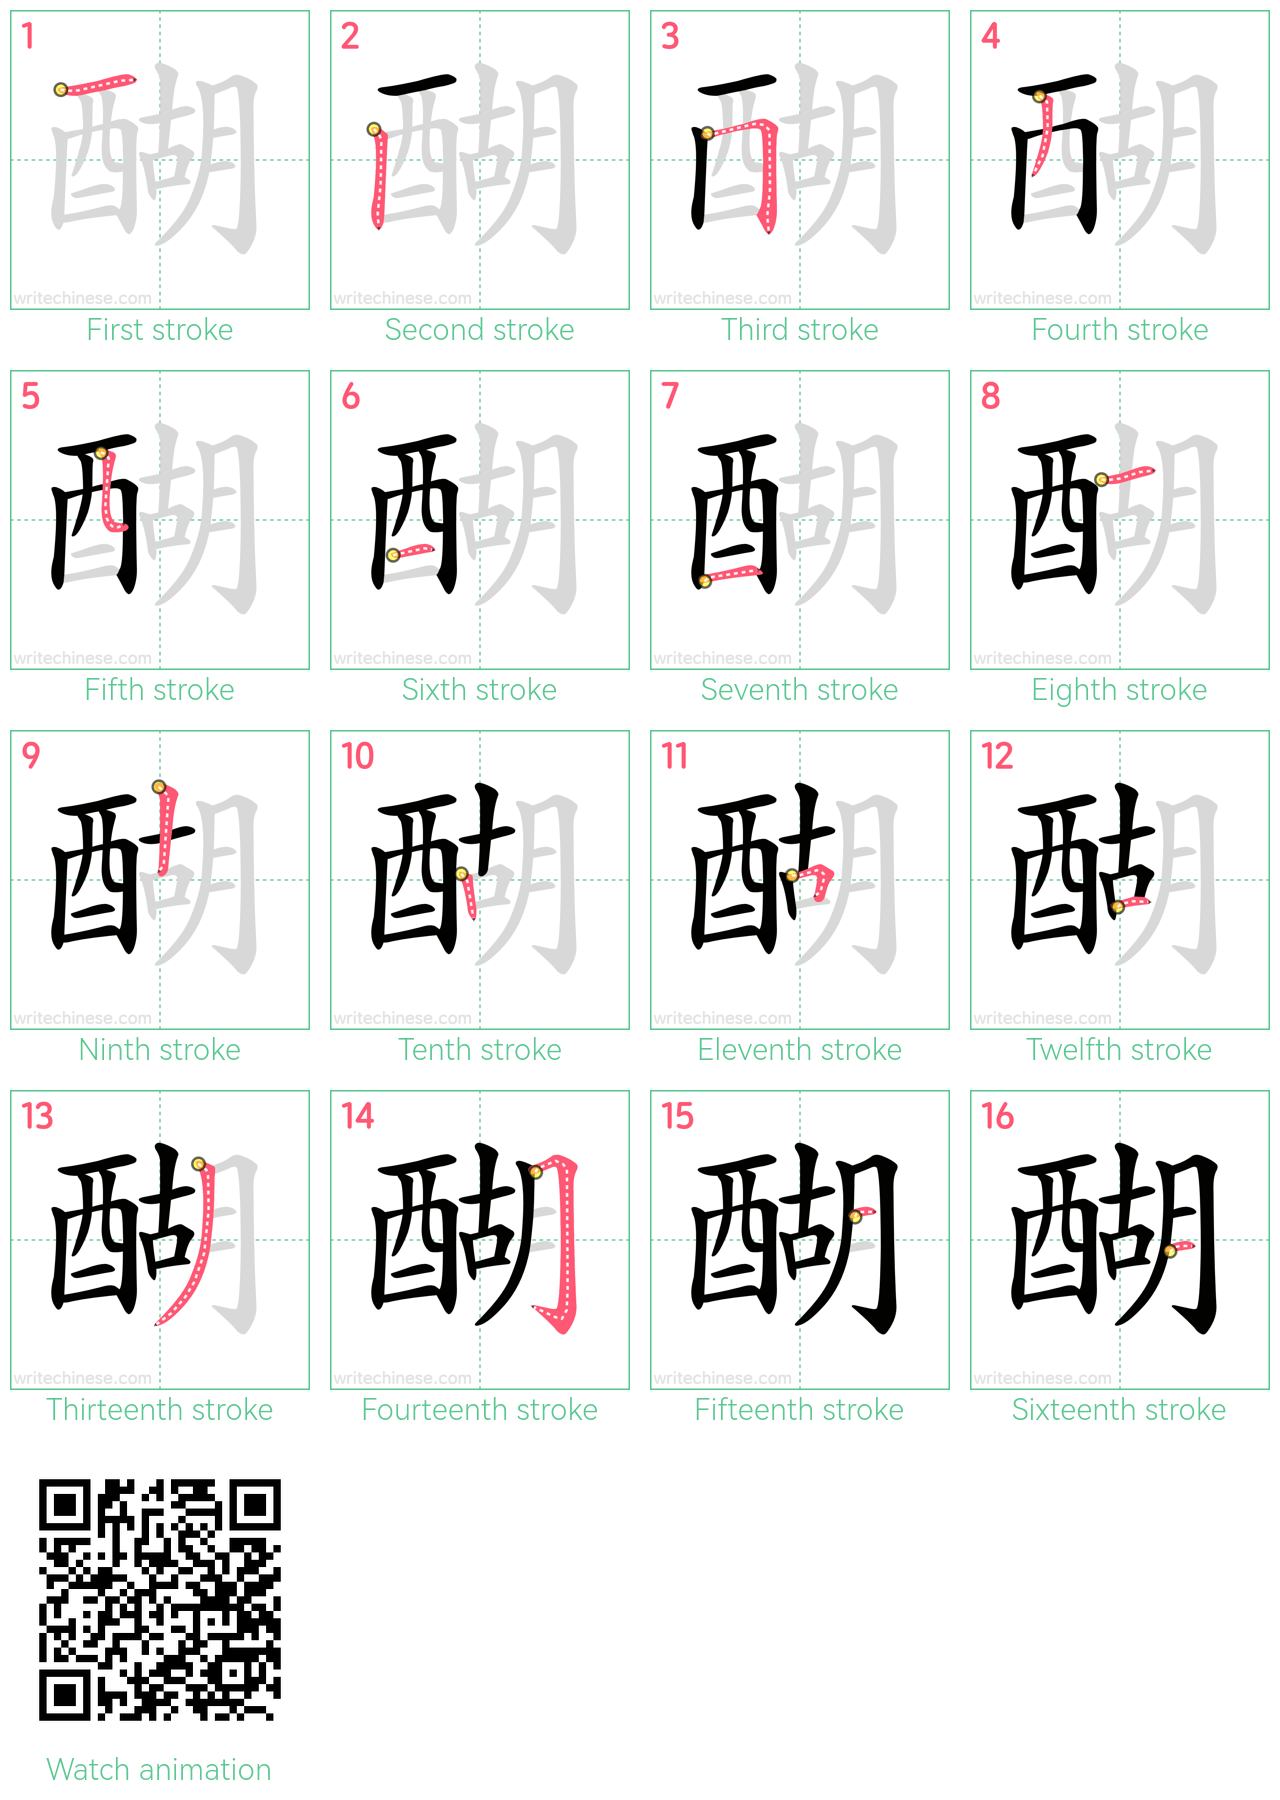 醐 step-by-step stroke order diagrams